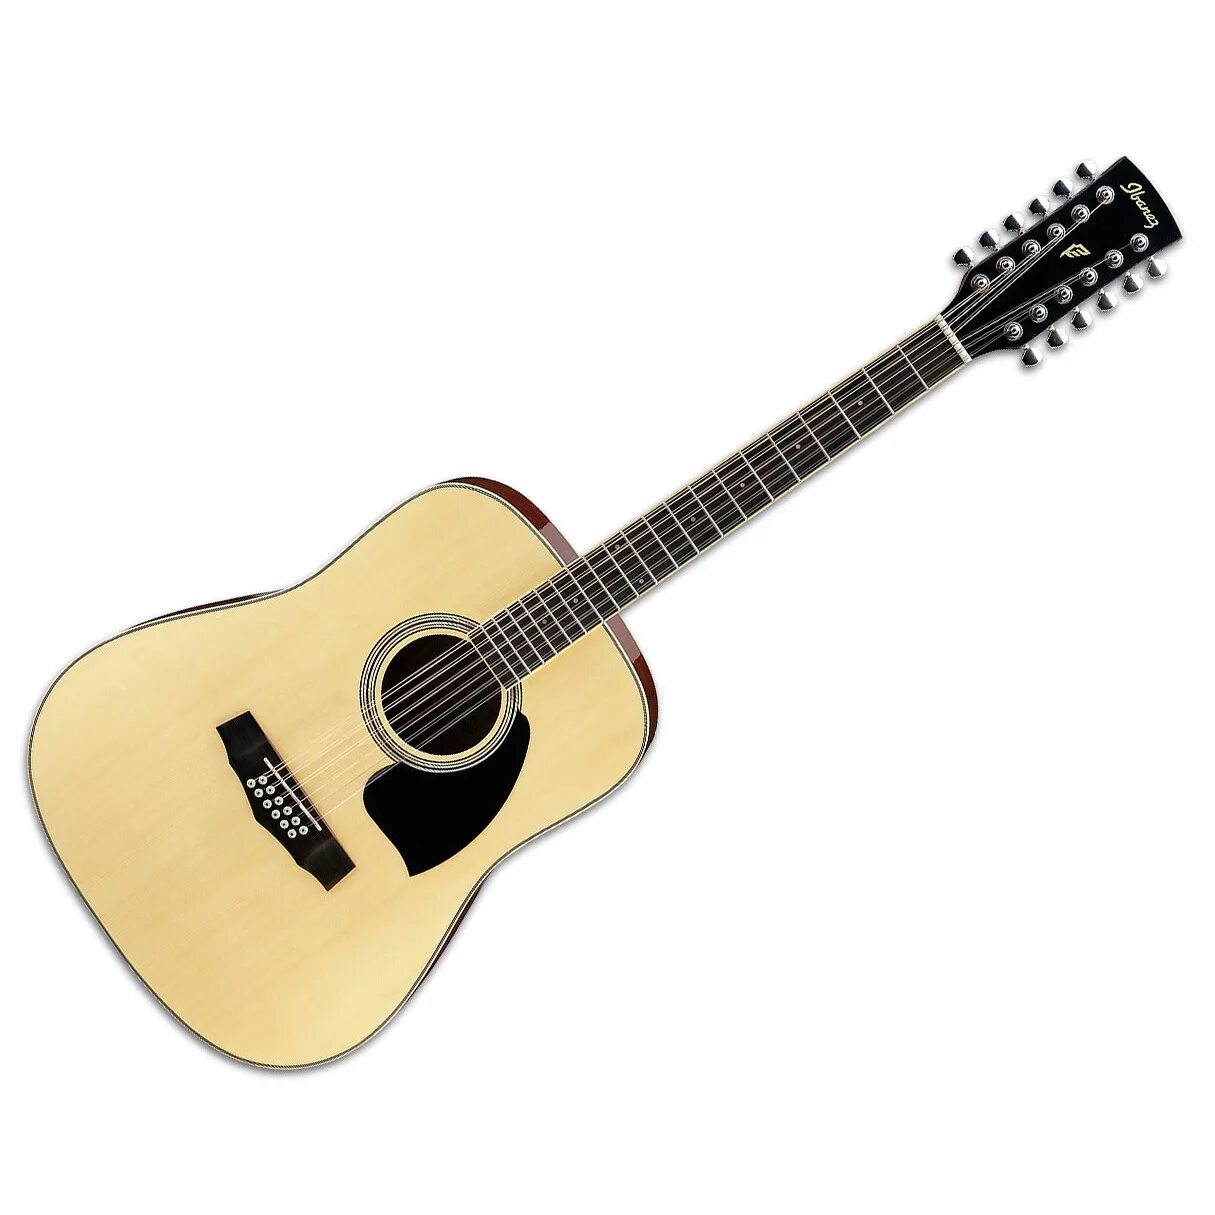 Двенадцатиструнная гитара купить. Ibanez pf15-NT. Ibanez pf1512. Ibanez 12 струнная акустическая гитара. Ибанез гитара акустическая 12 струнная.